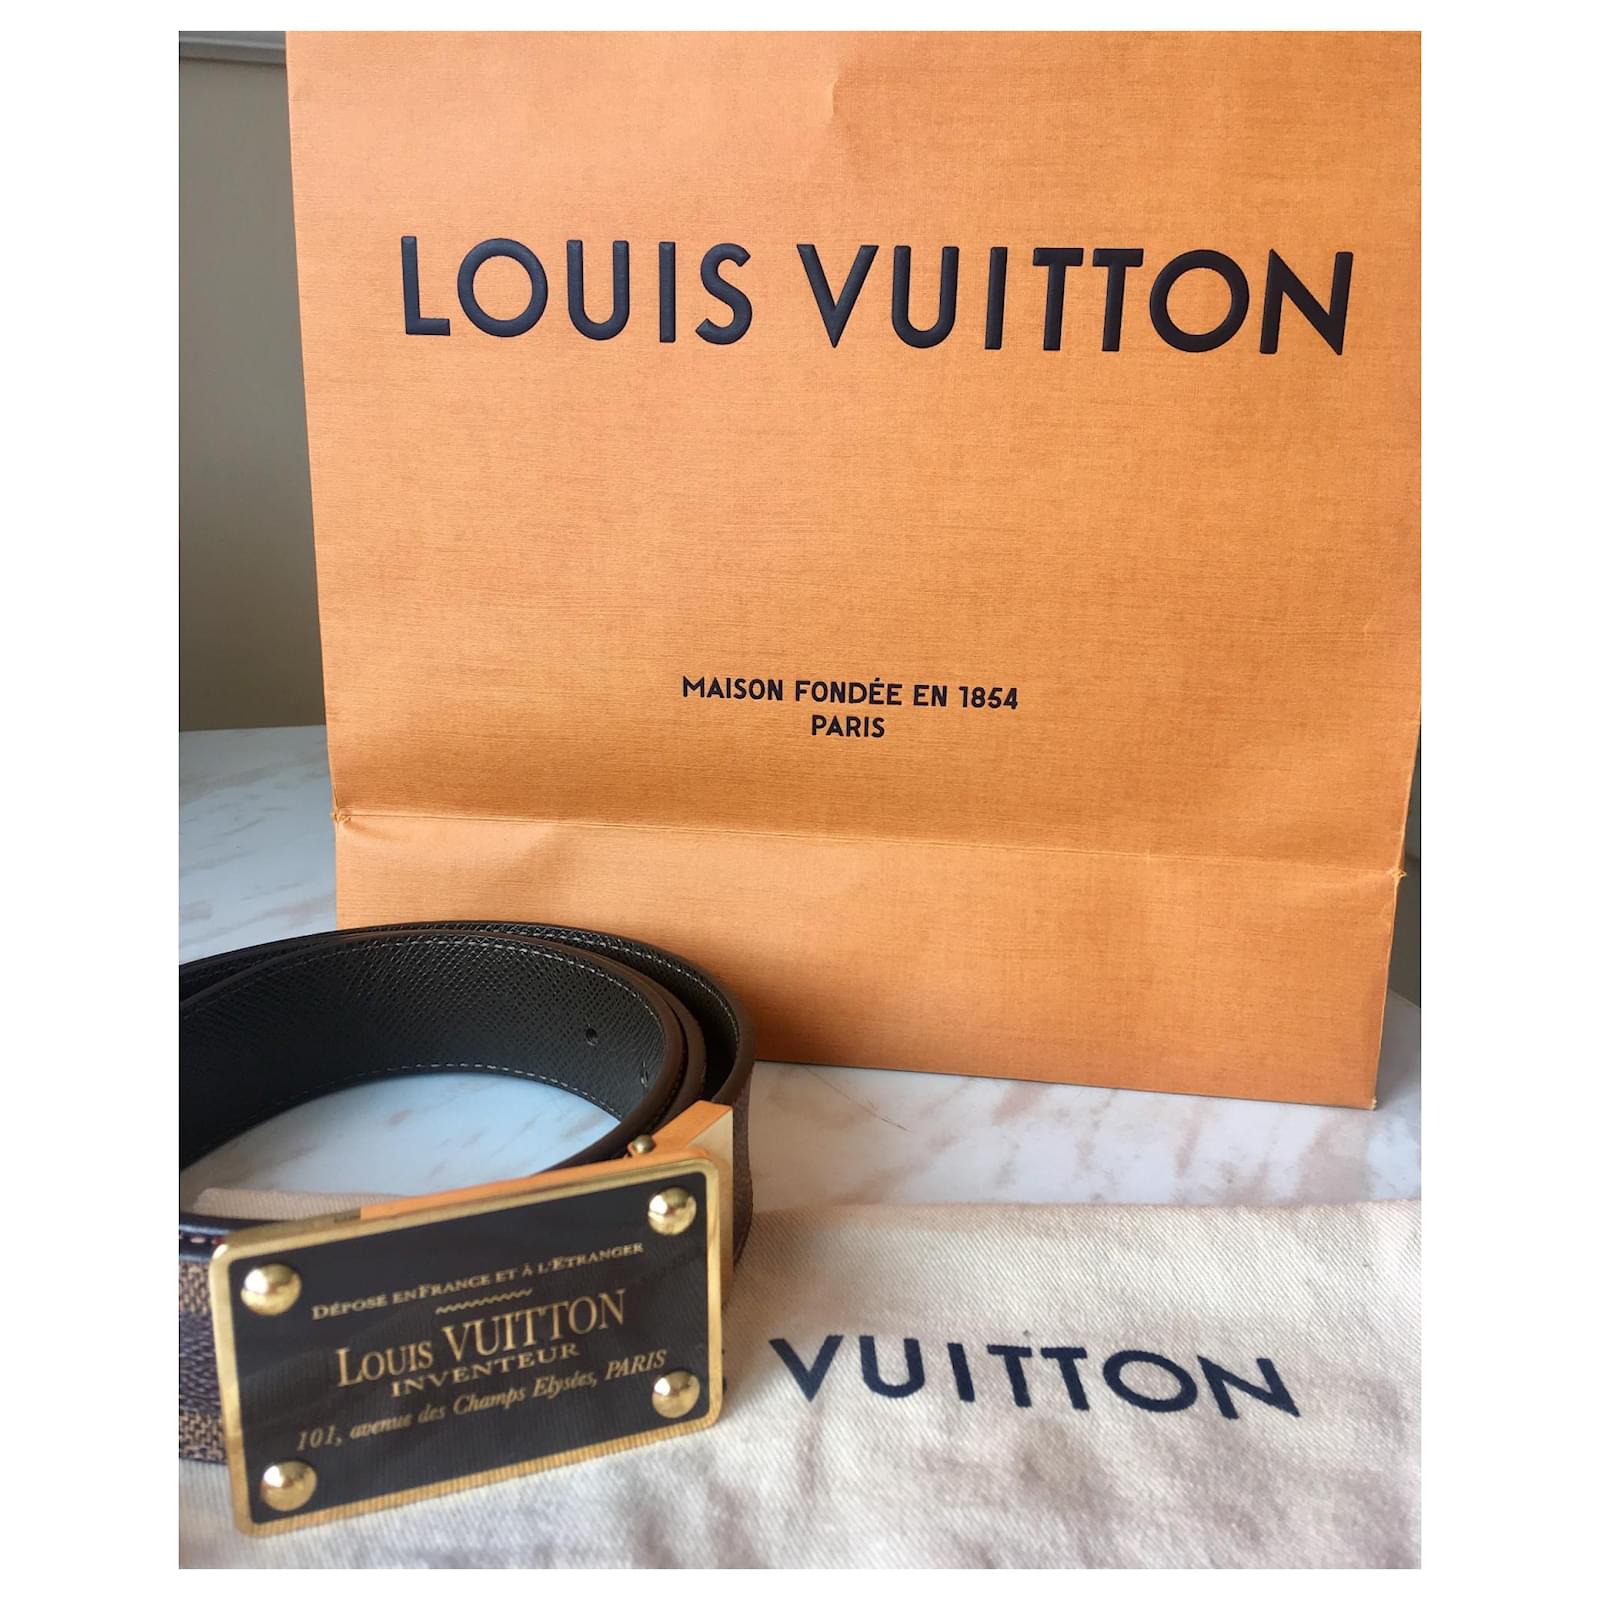 Louis Vuitton 2012 Inventeur Belt - Brown Belts, Accessories - LOU684598